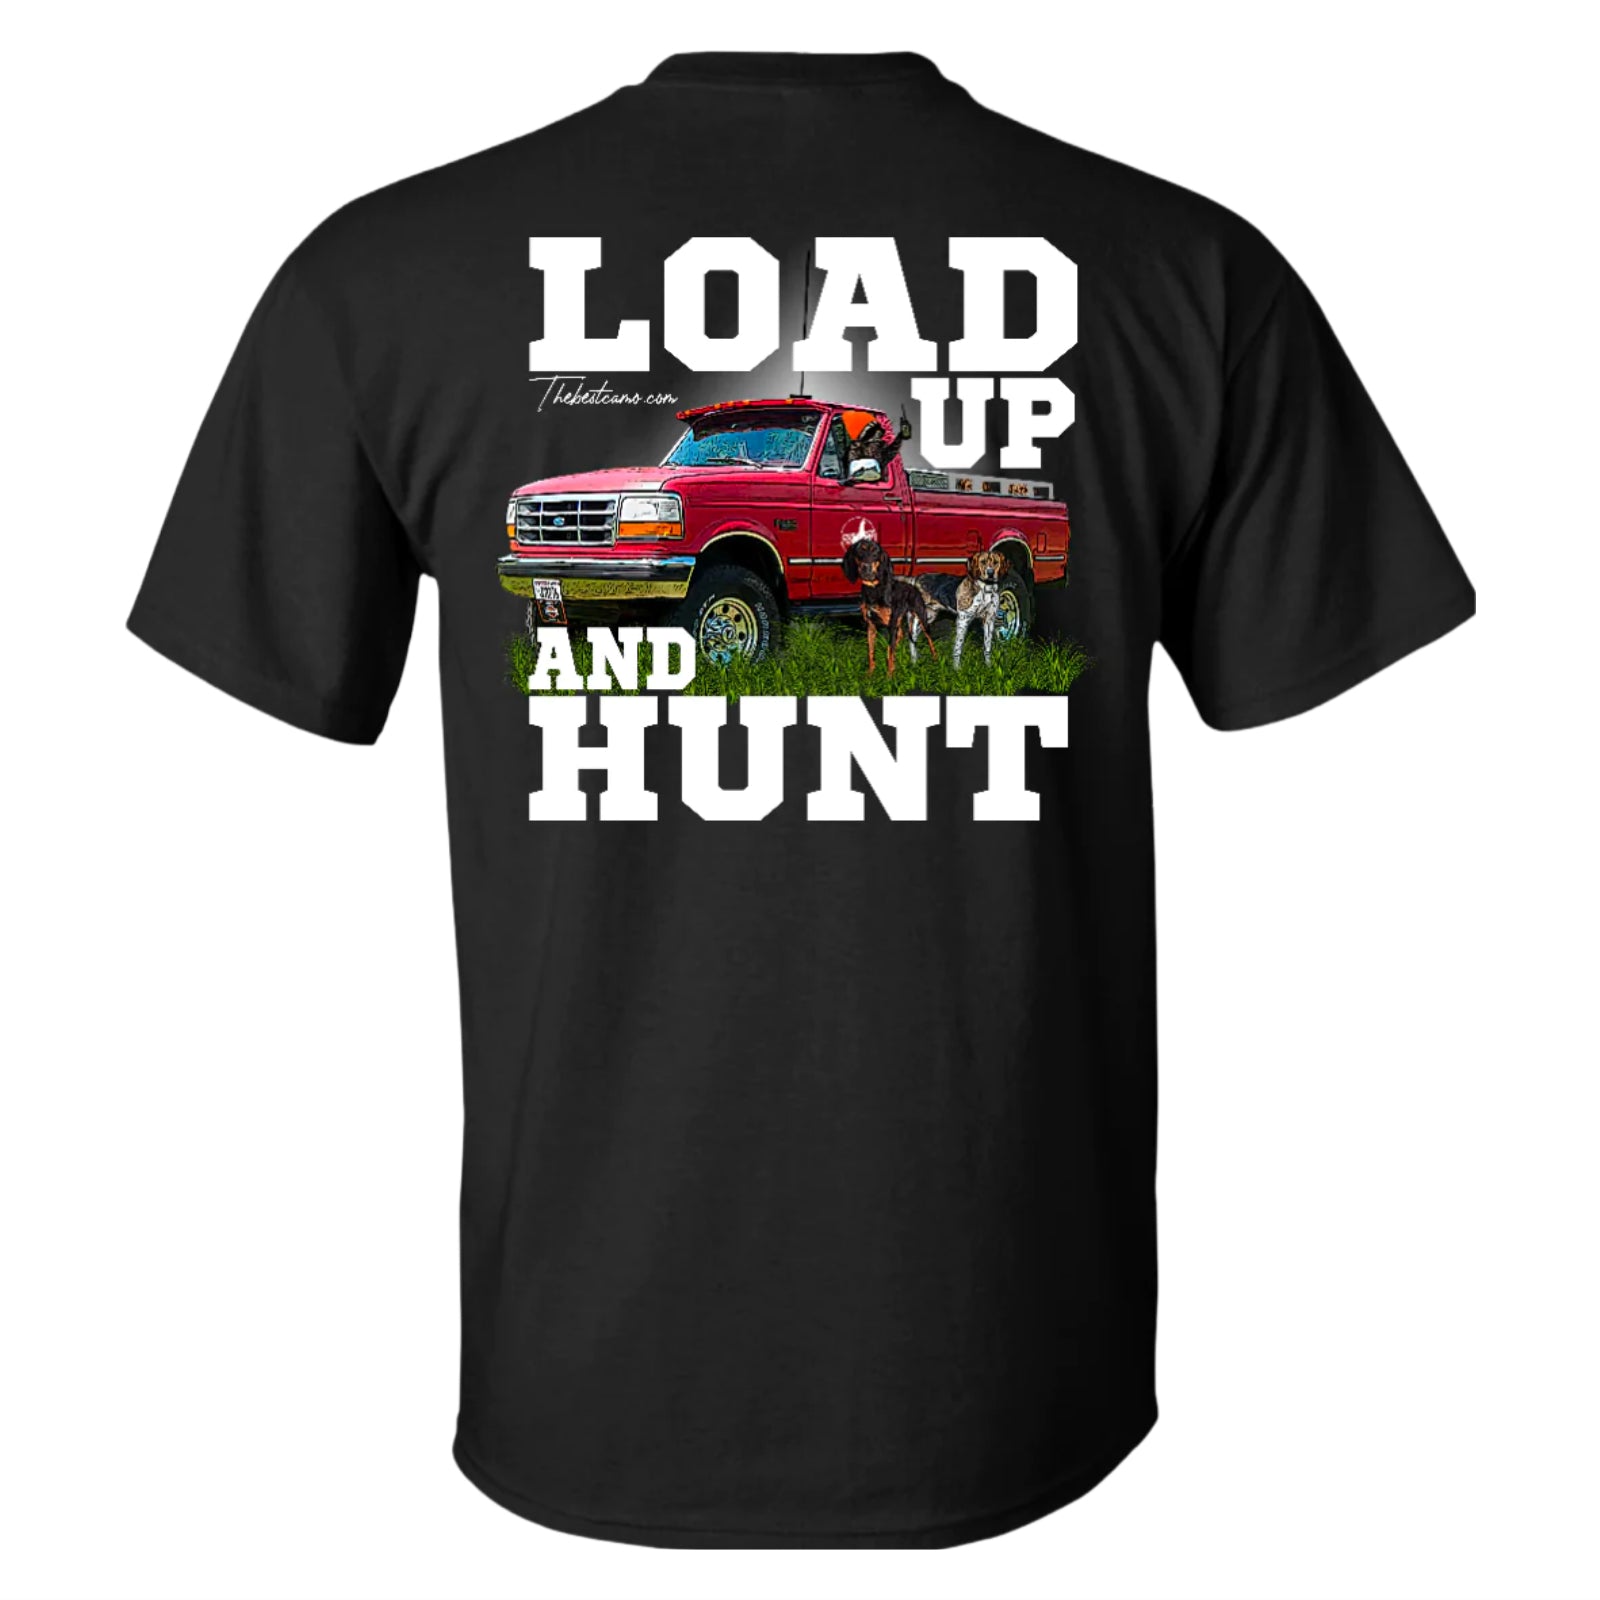 Load Up & Hunt - Hound Hunter Shirt